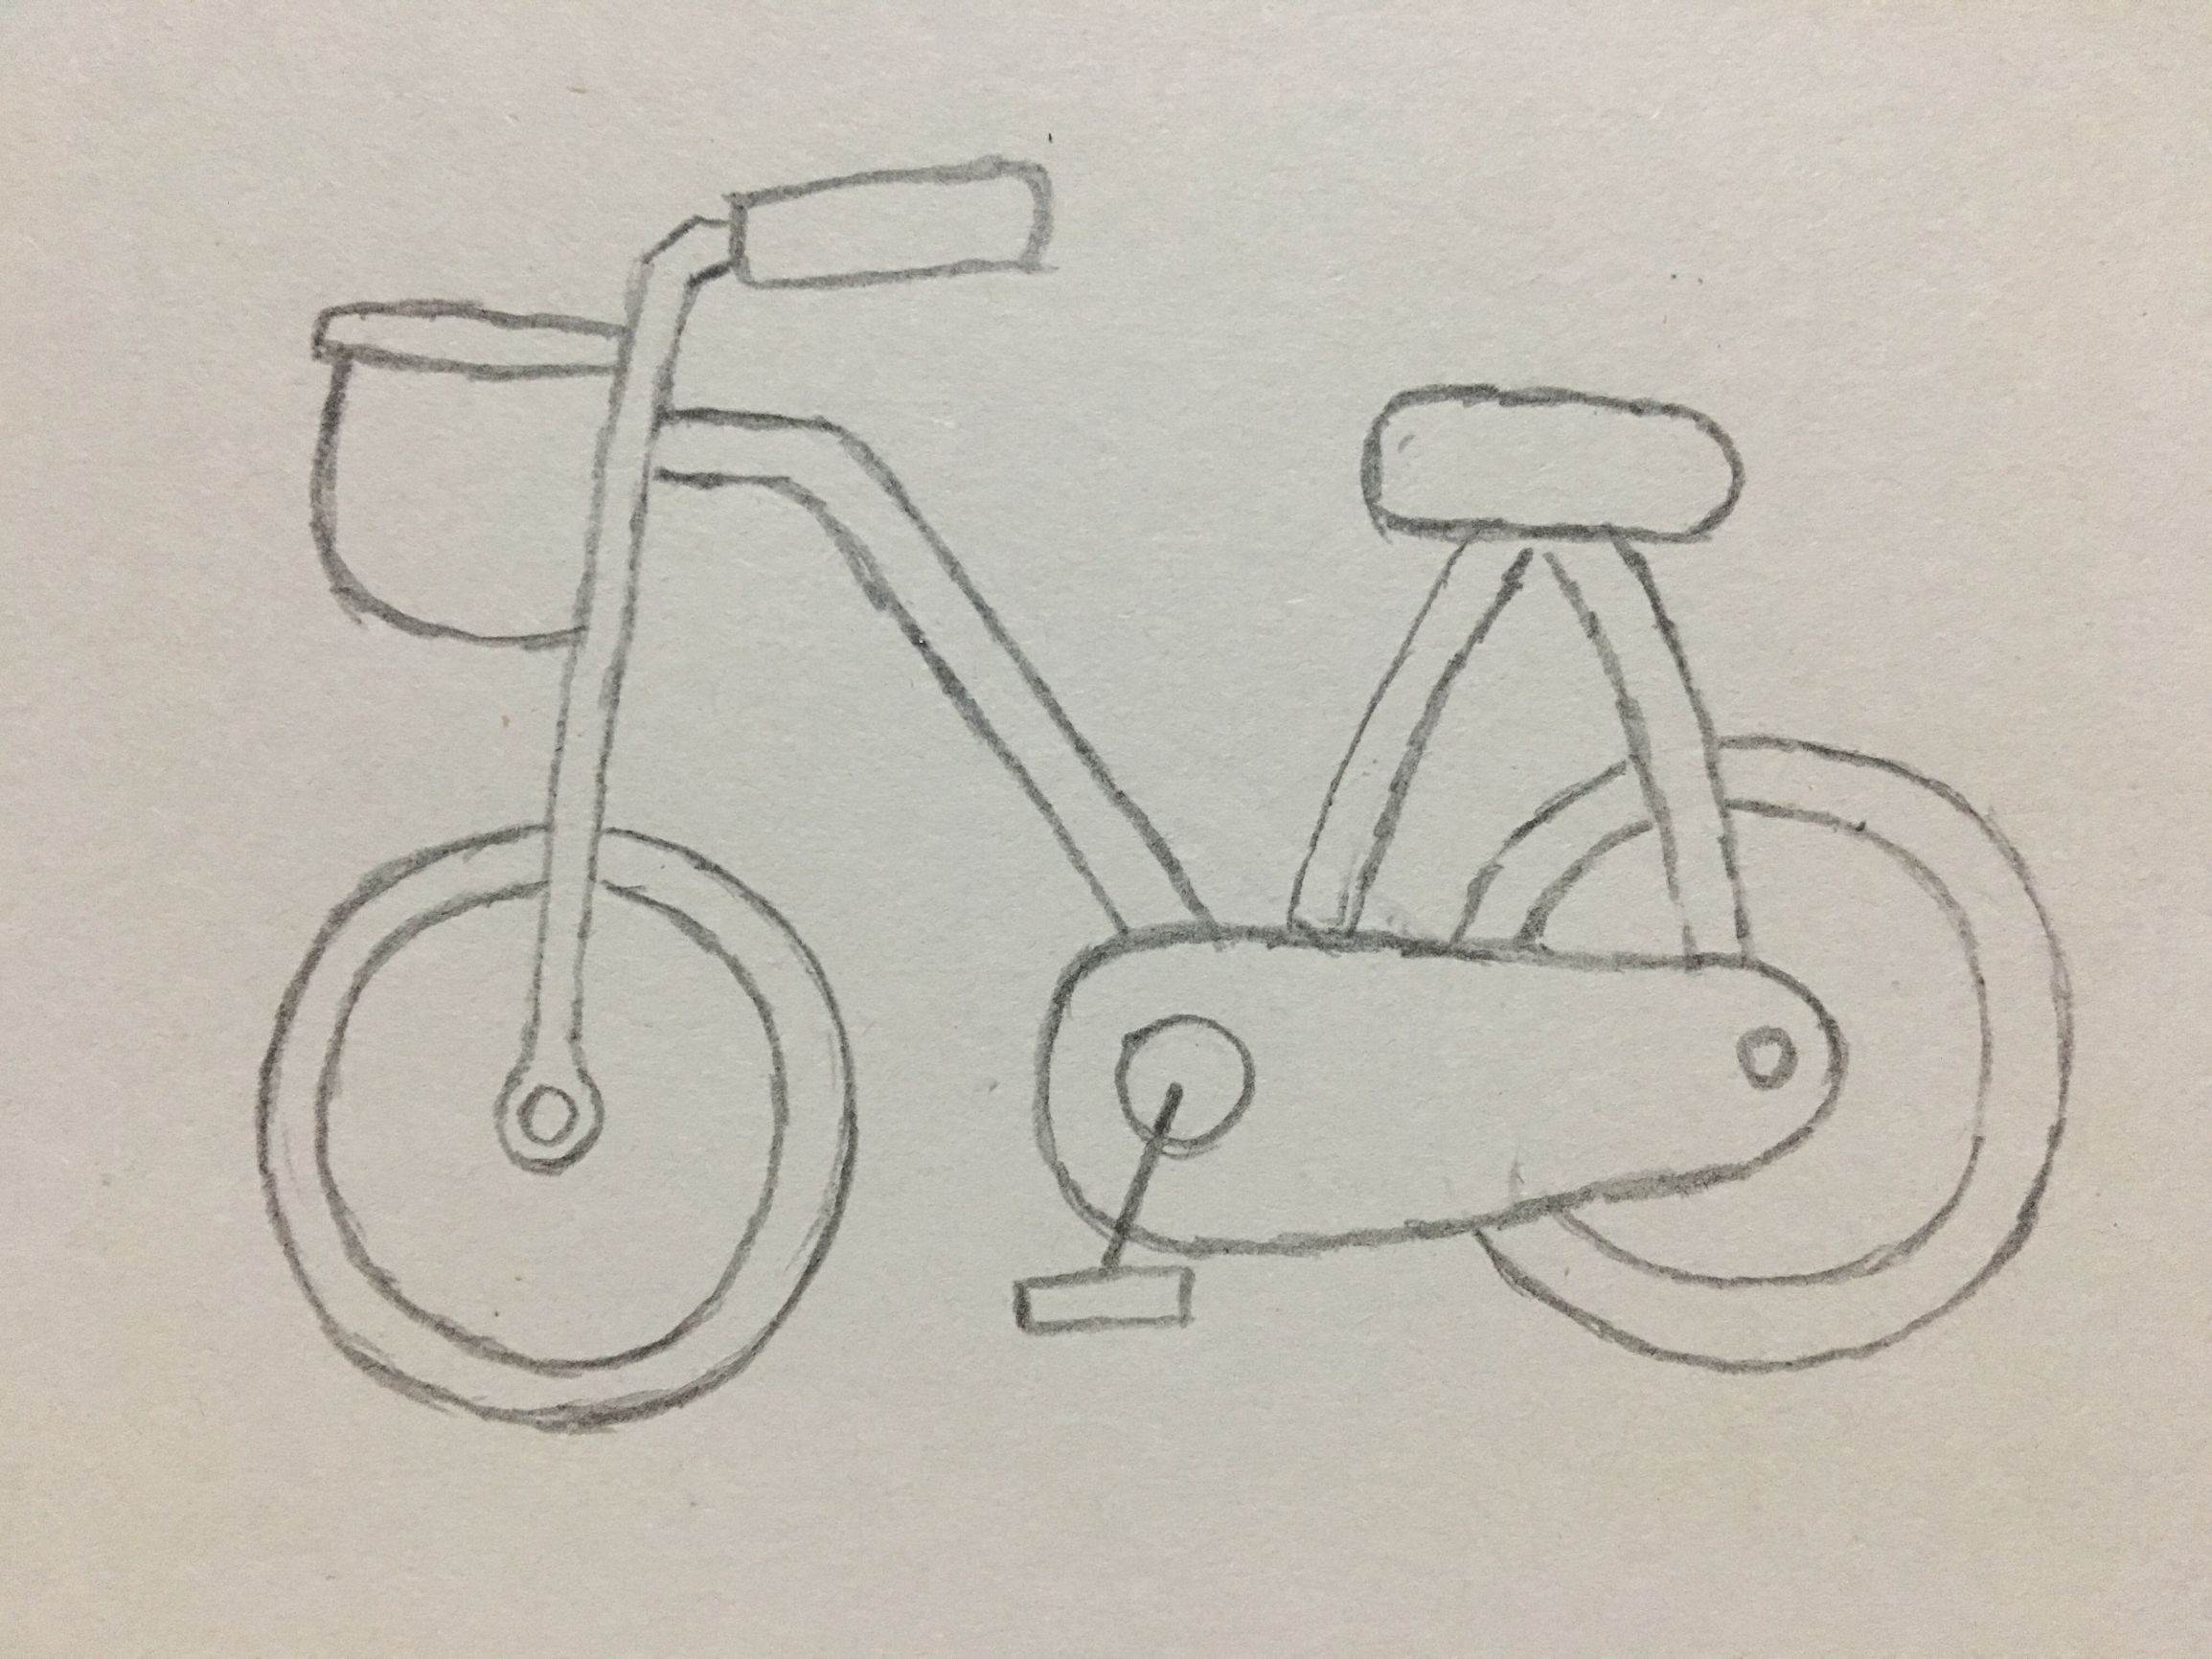 自行车骑车简笔画粗线条黑色学画画图案这是一组自行车简笔画的内容